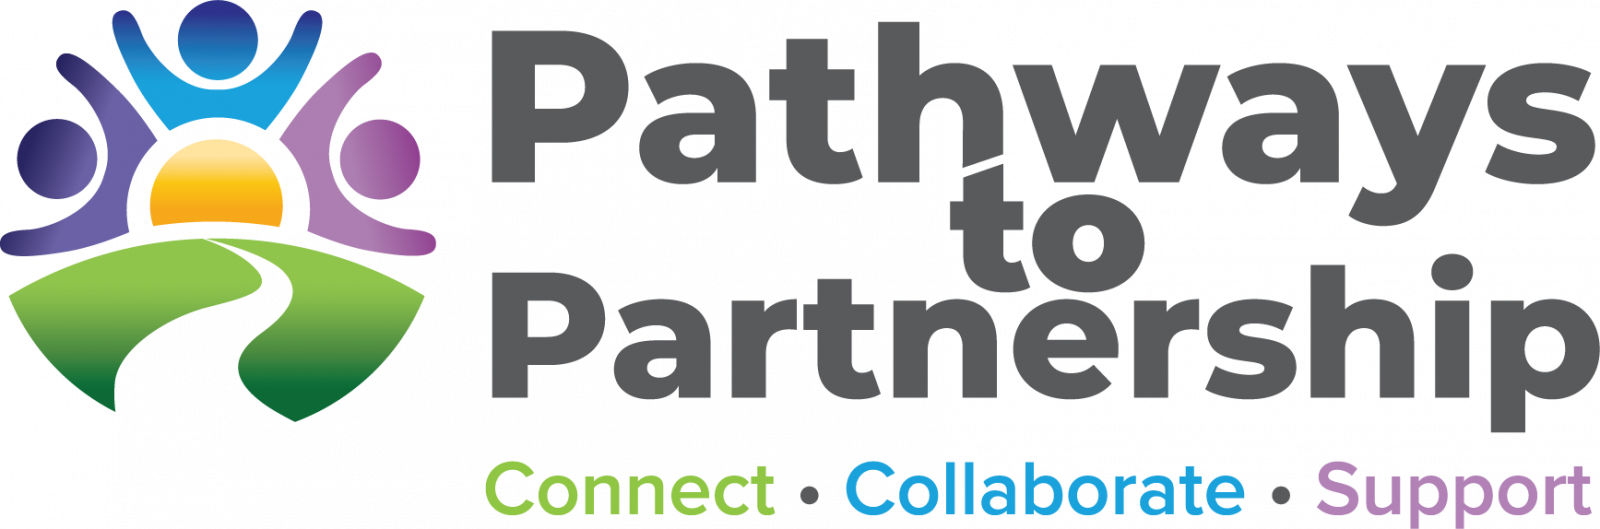 Pathways to Partnership